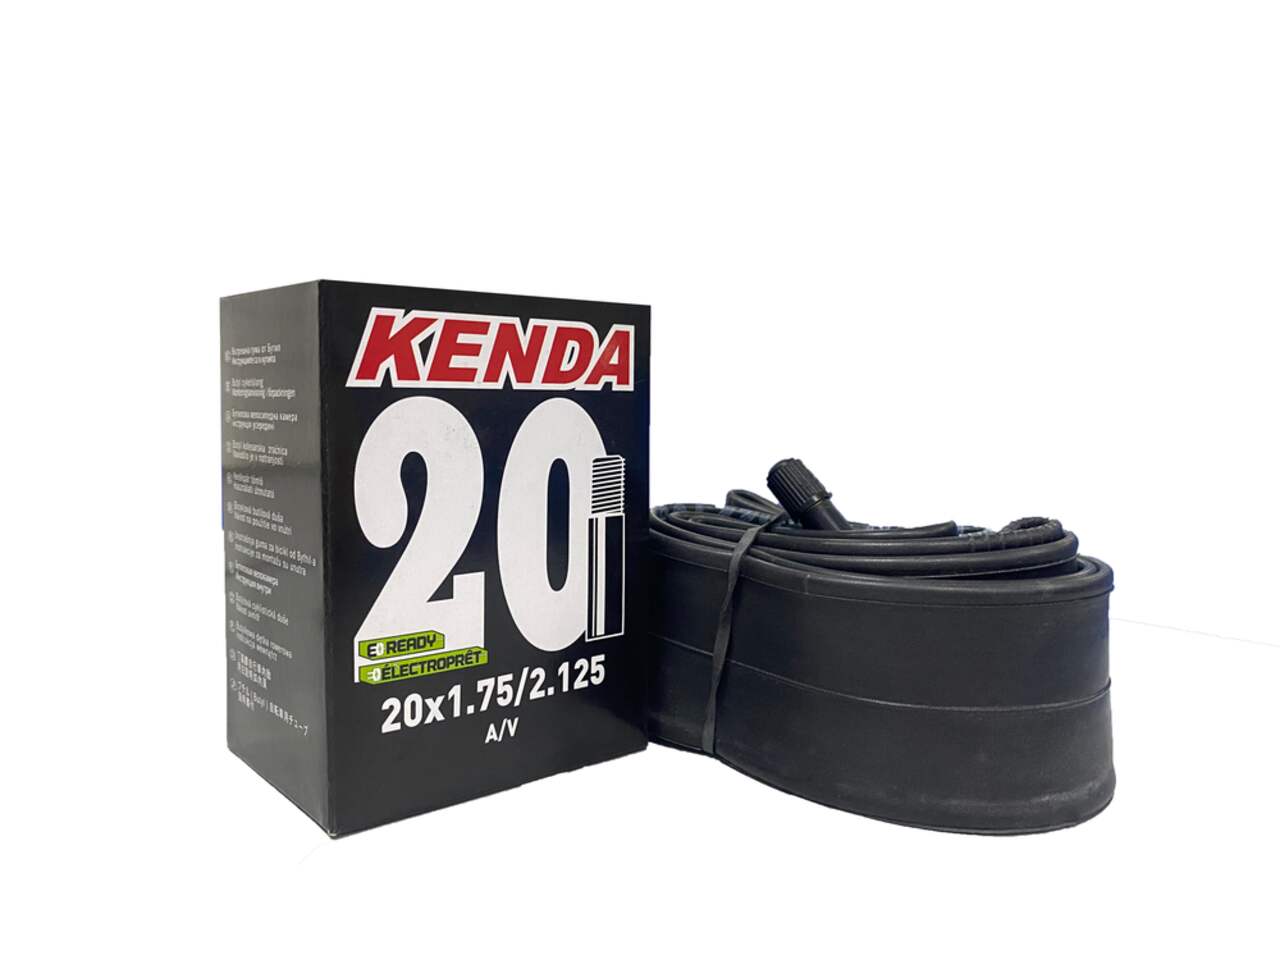 Increvable : Chambre à air Kenda 8 1/2 x 2 ETRTO / 50-134 - 70/45° -   - Les pneus vélos increvables ou introuvables !